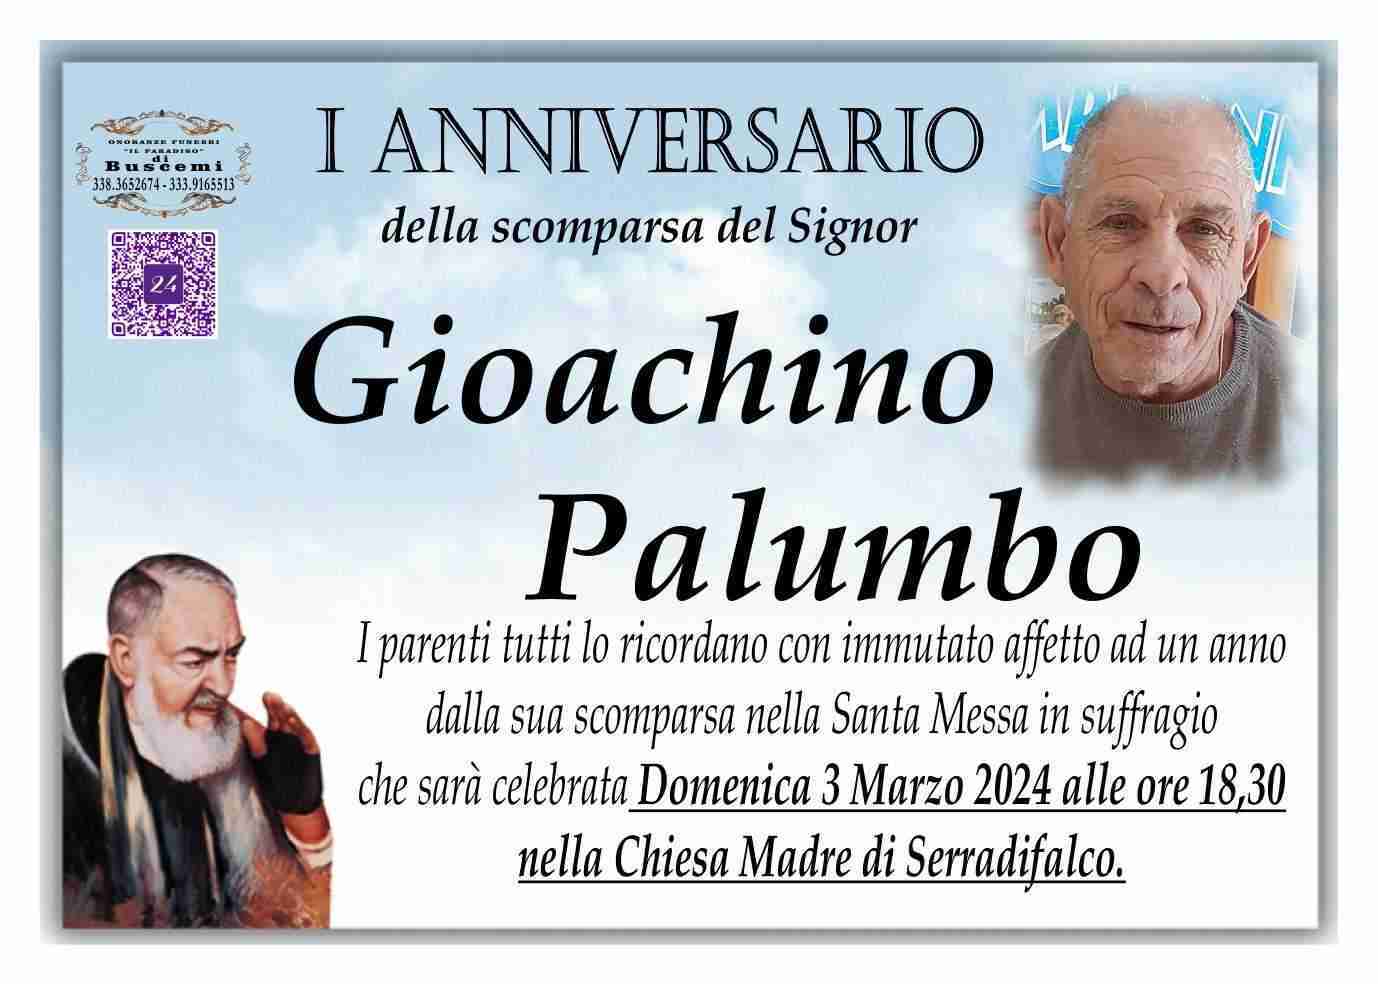 Gioachino Palumbo